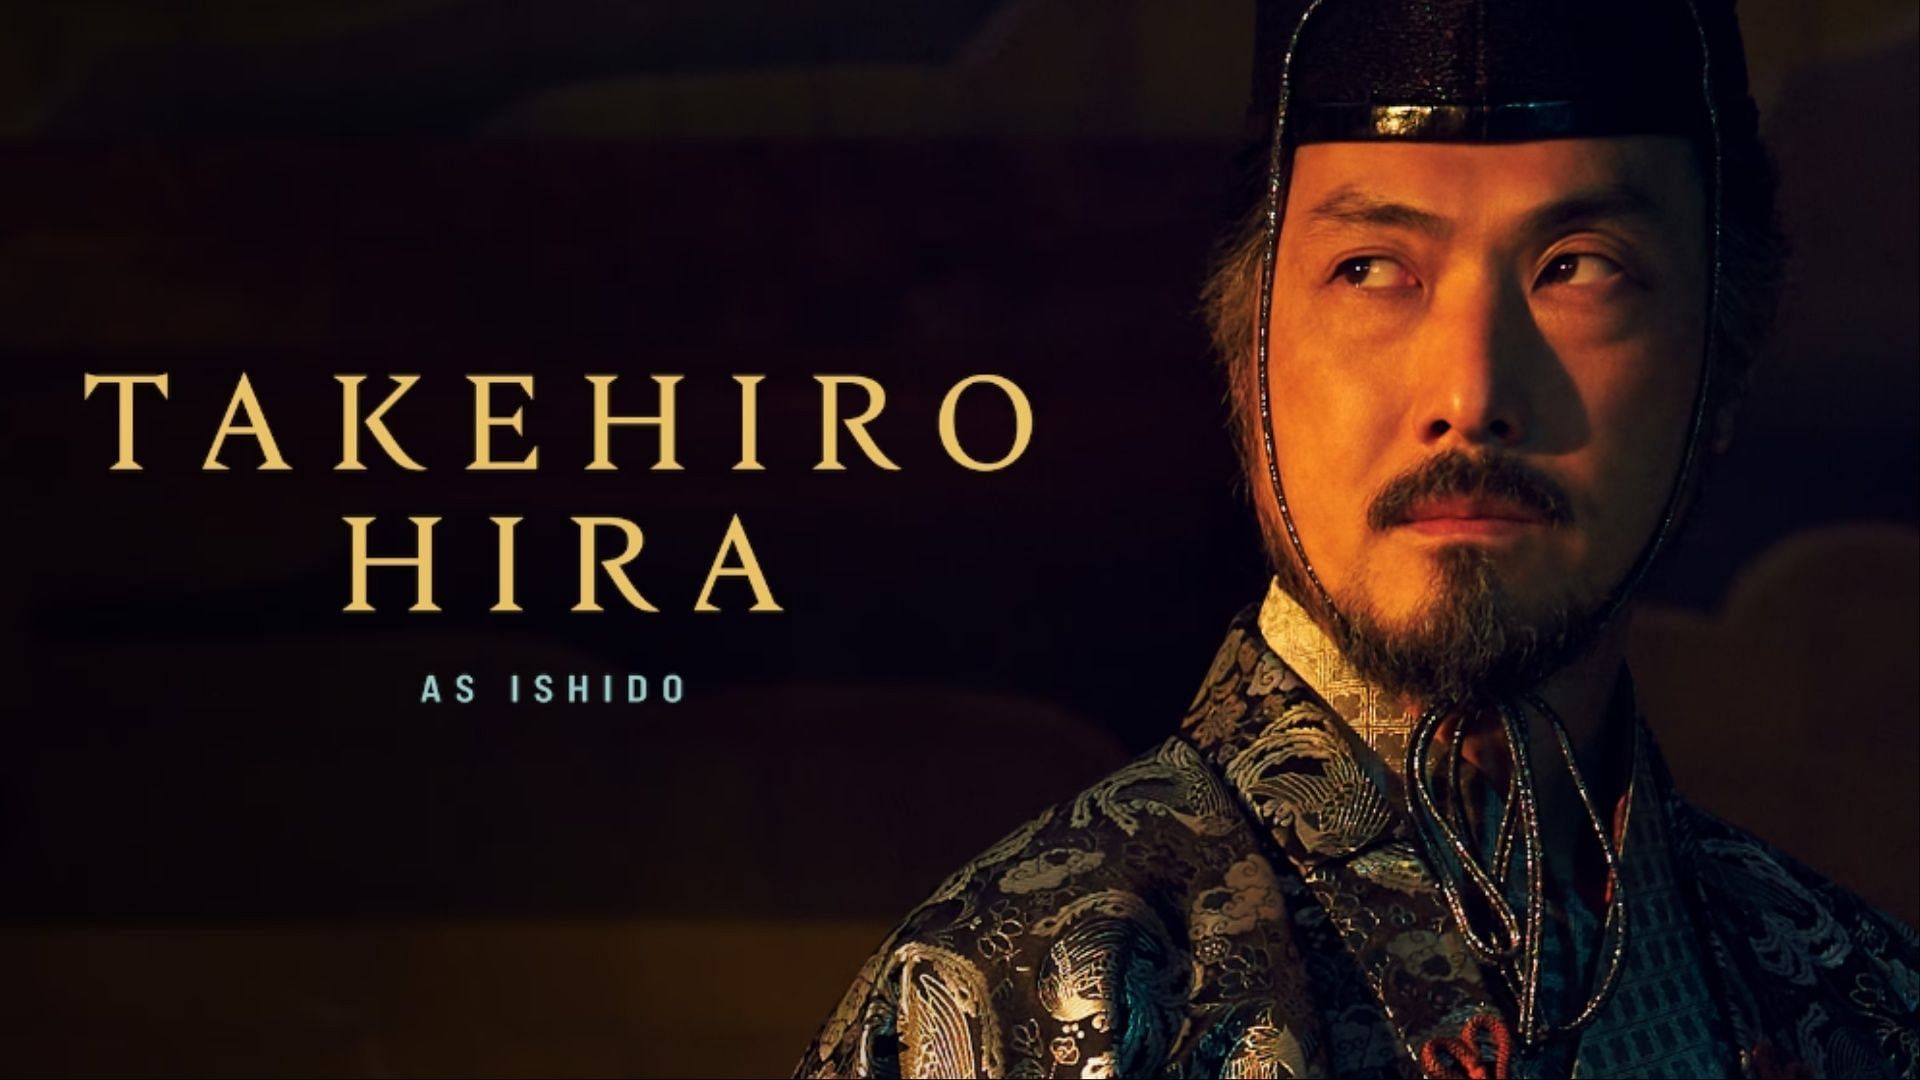 Takehiro Hira as Ishido Kazunari (Image via FX)